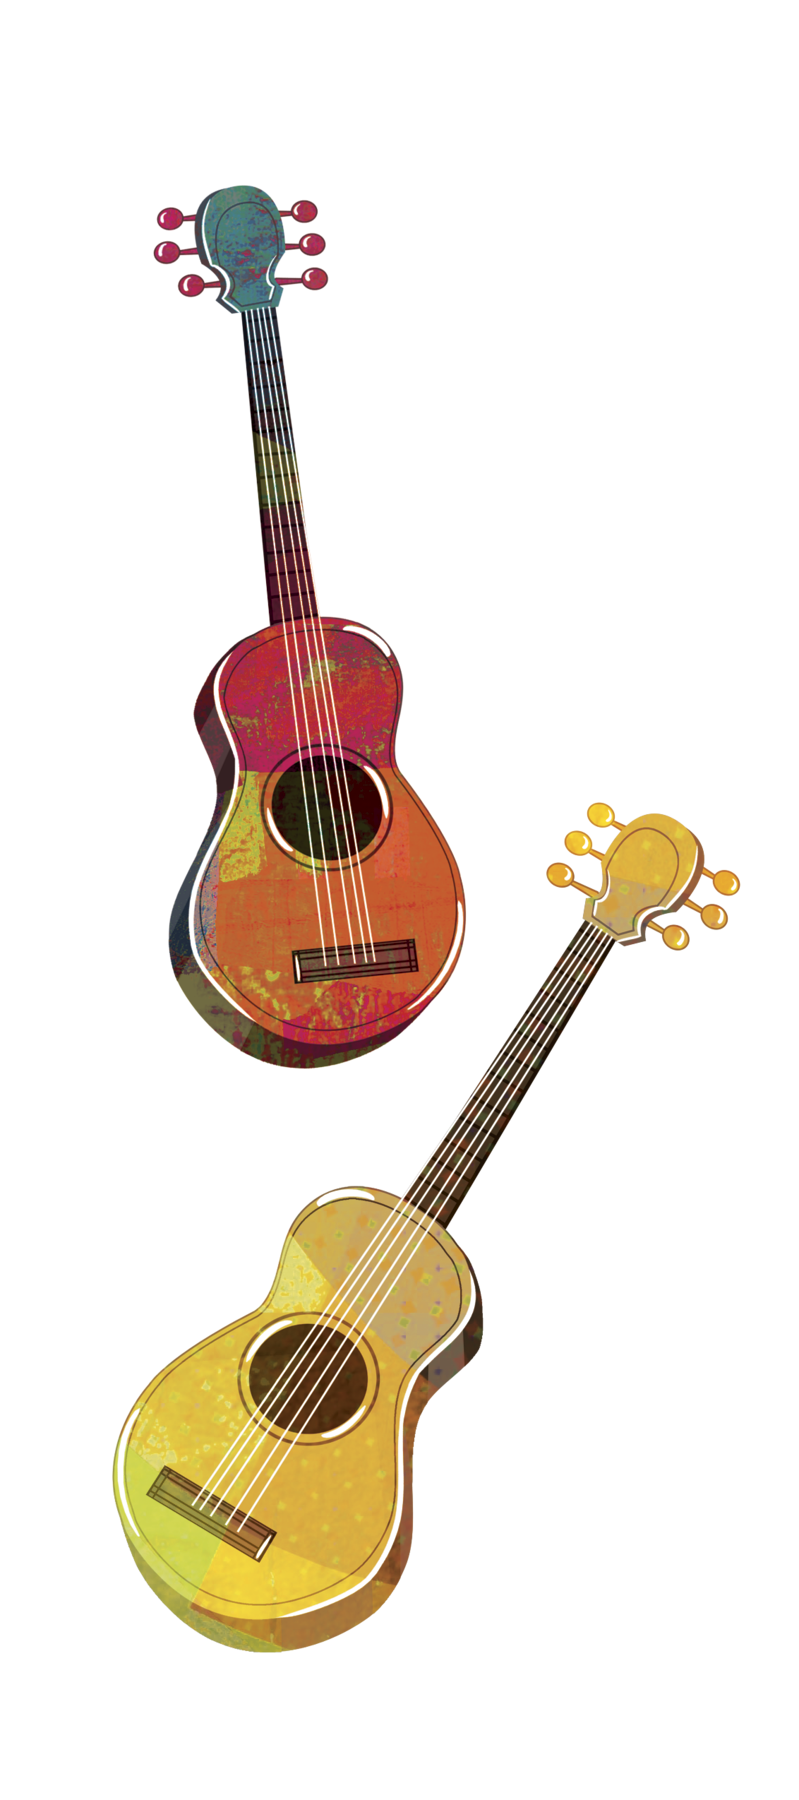 Ilustração. Dois violões de cores diferentes. Acima. na vertical, violão em tons de vermelho e laranja e abaixo, violão amarelo-claro inclinado com o braço para direita.